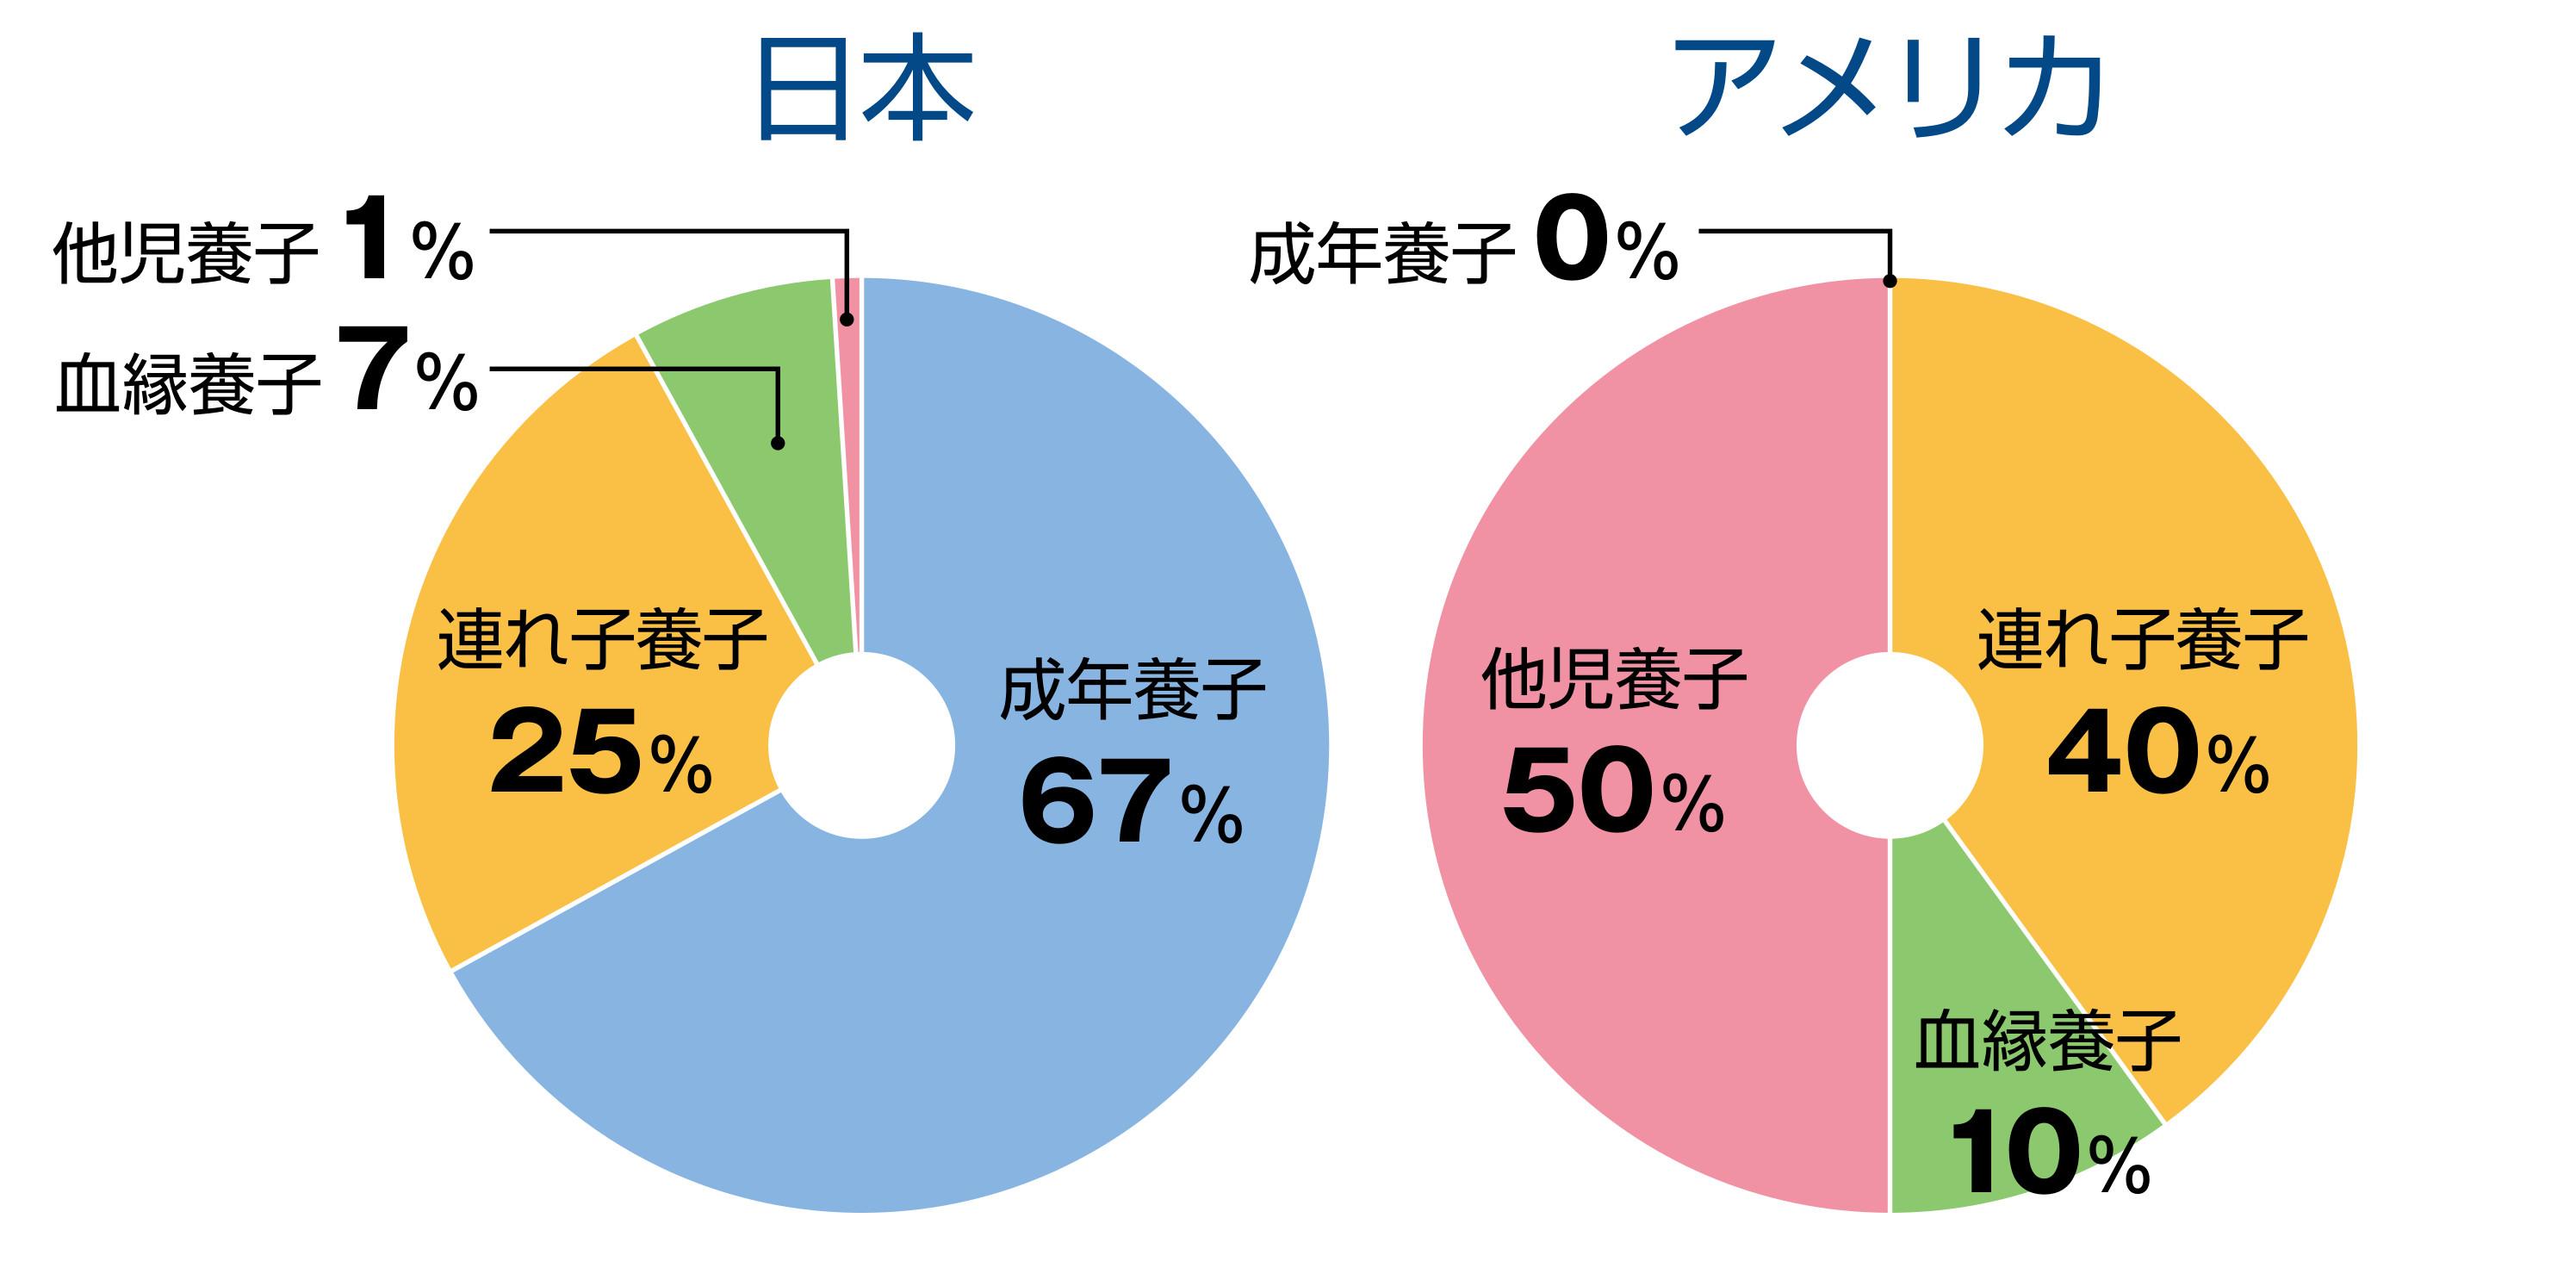 養子縁組の構成の日米比較の円グラフ